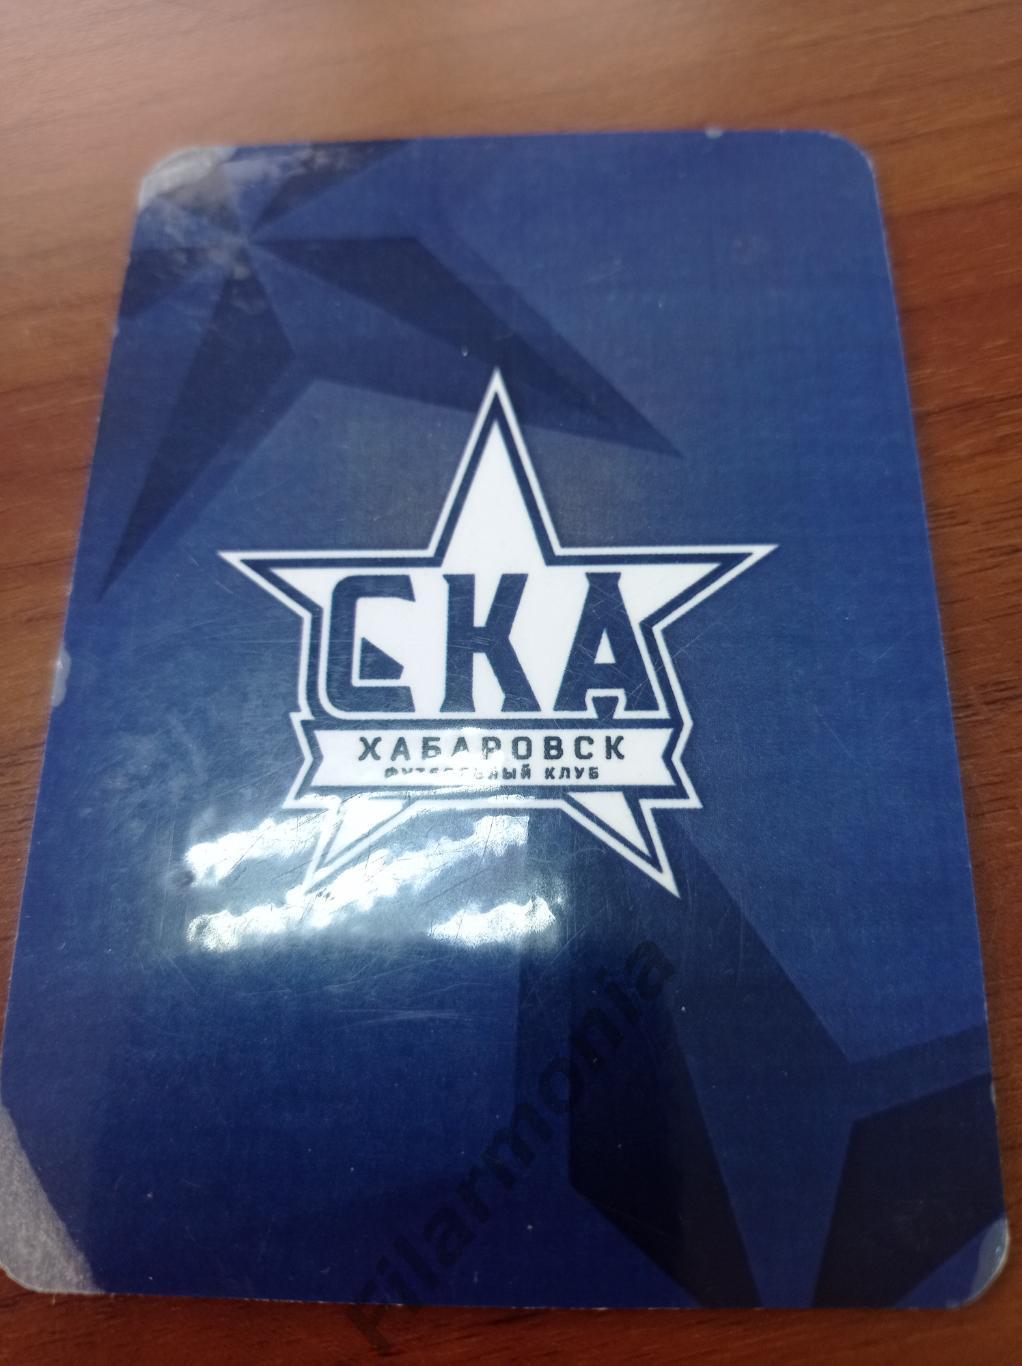 2019-2020 СКА Хабаровск календарь игр